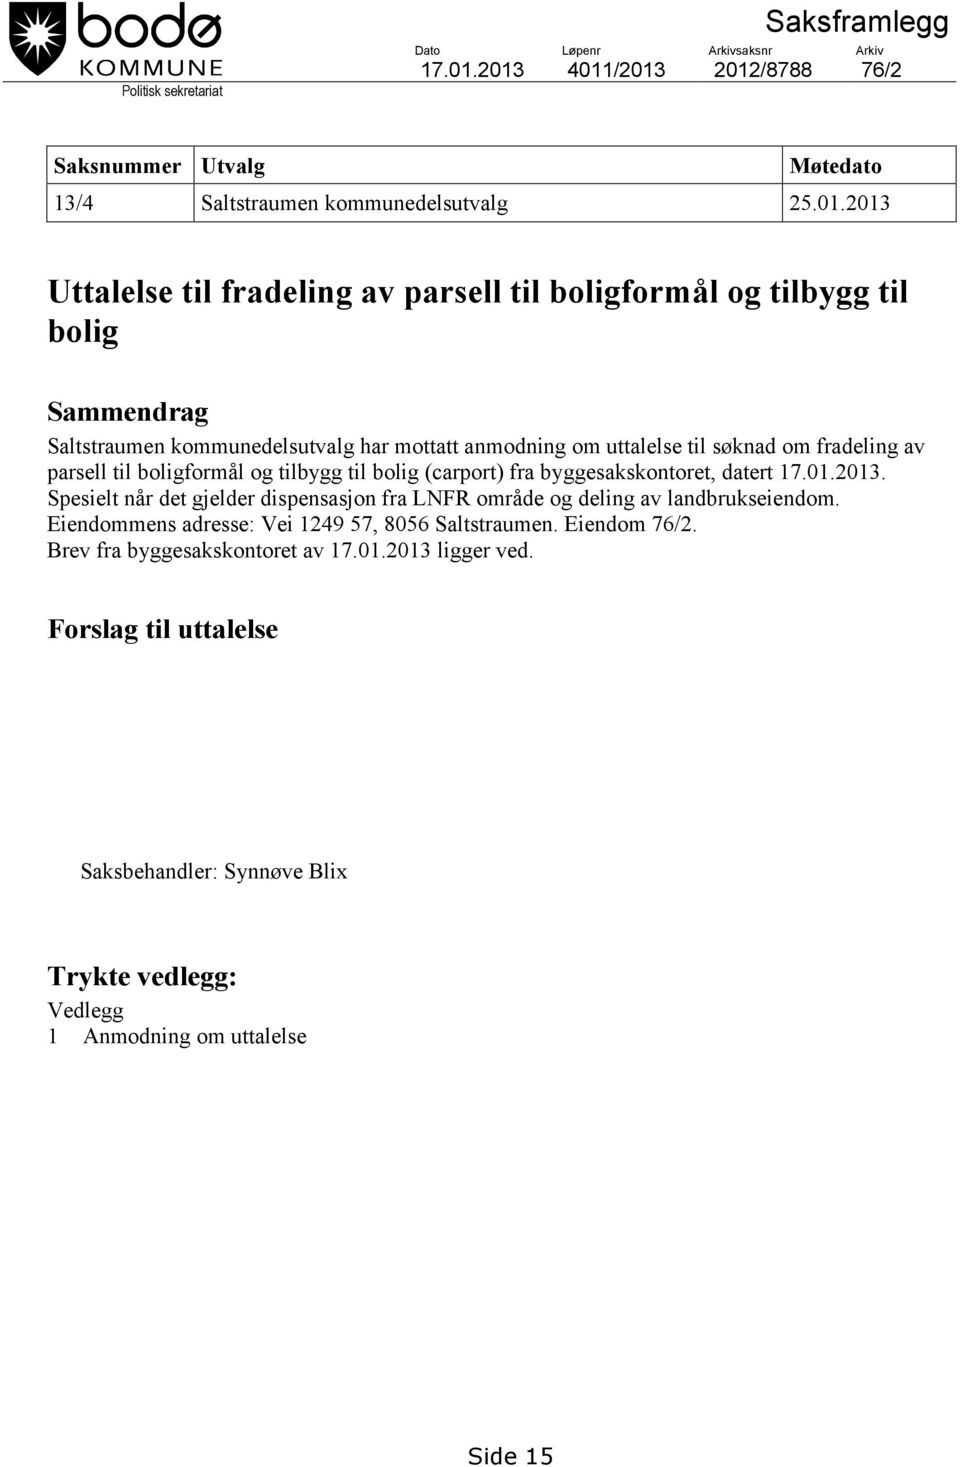 Saltstraumen kommunedelsutvalg har mottatt anmodning om uttalelse til søknad om fradeling av parsell til boligformål og tilbygg til bolig (carport) fra byggesakskontoret, datert 17.01.2013.